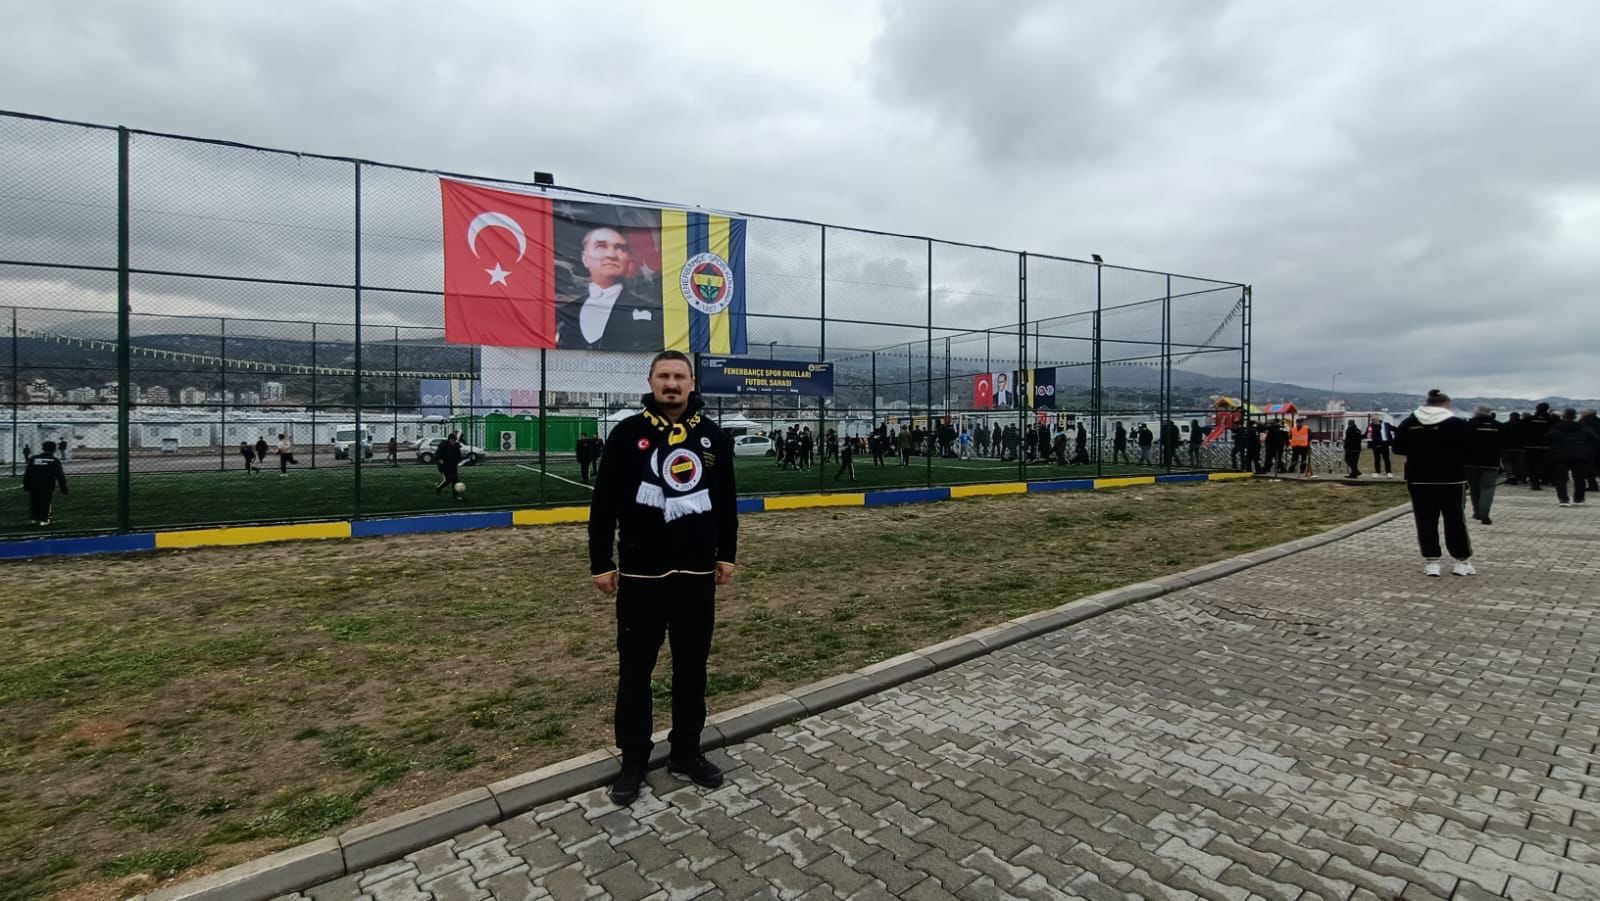  Kahramanmaraş Umut Kent Projesi’ne Ordu Fenerbahçeliler Derneği’nden Yerinde Destek